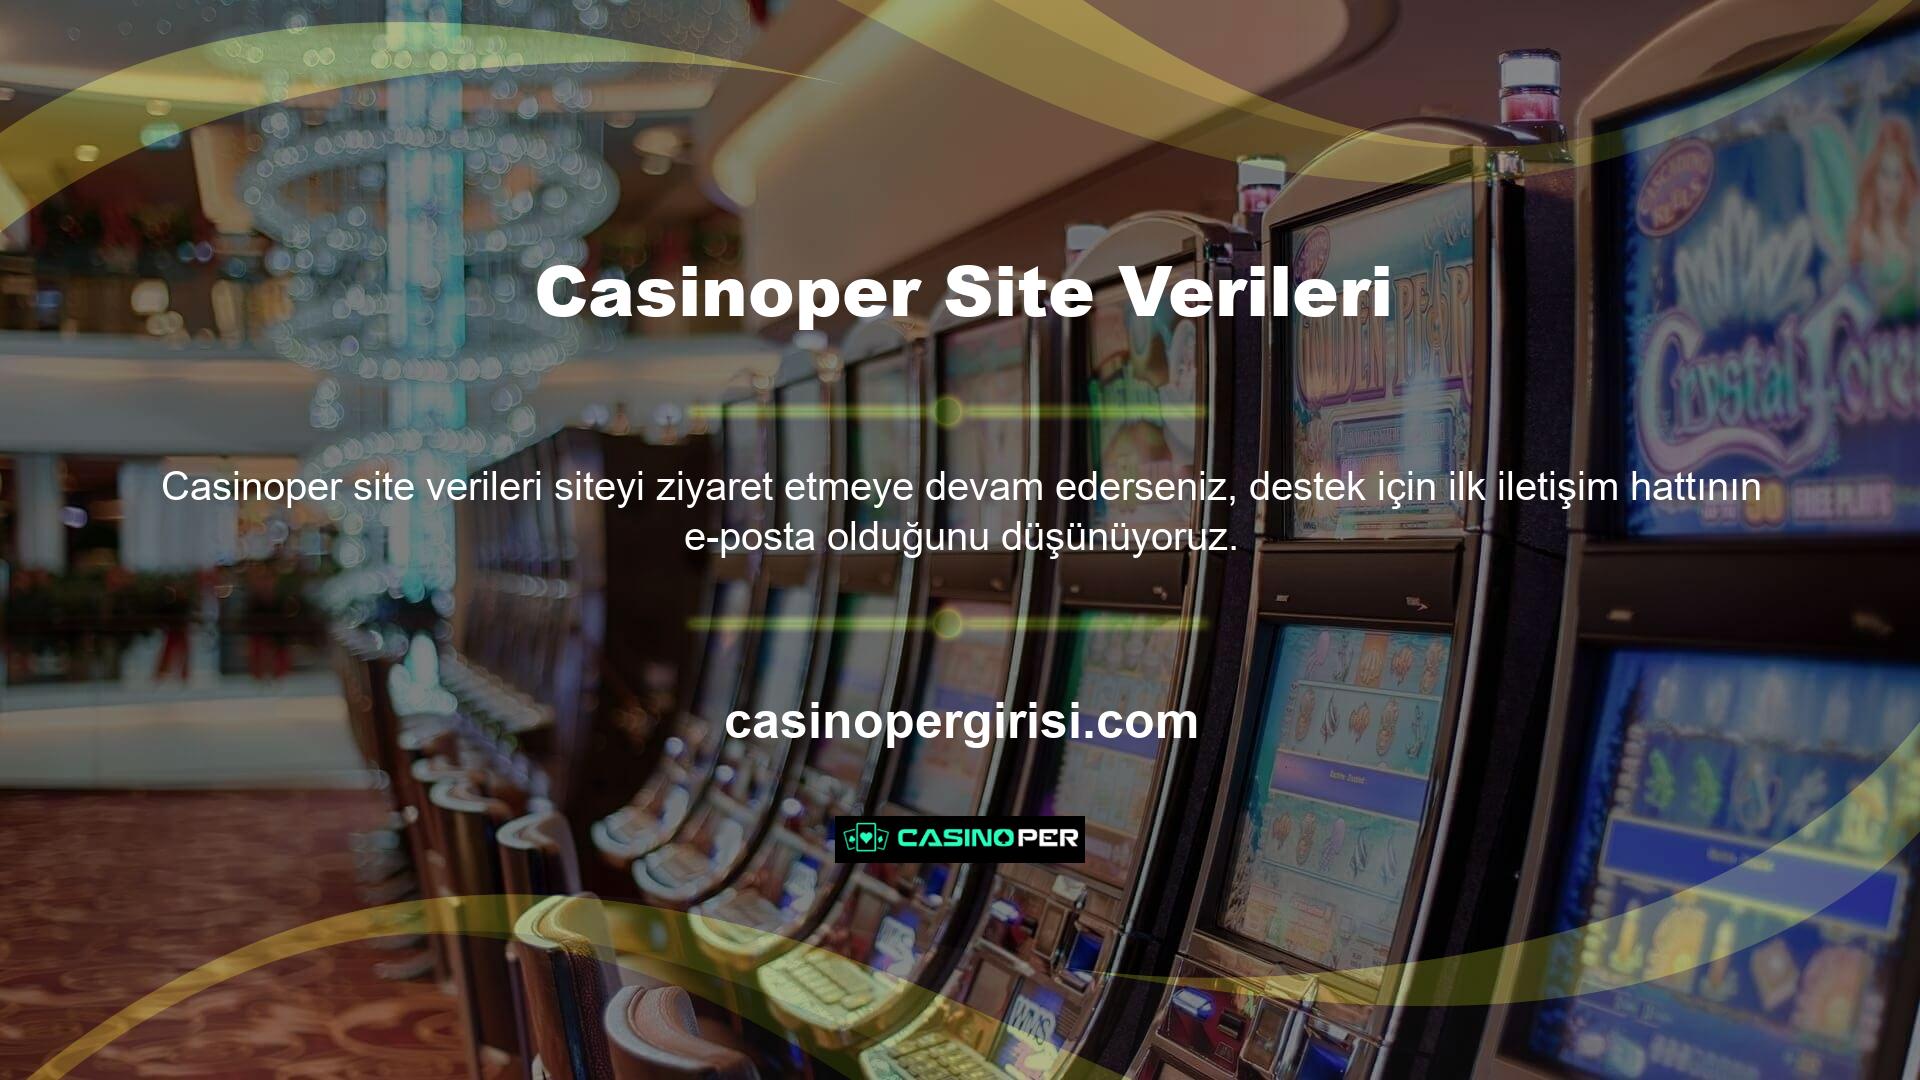 Sosyal medya adresinin yanı sıra Casinoper web sitesi hakkında spesifik bir veri mevcut değildir